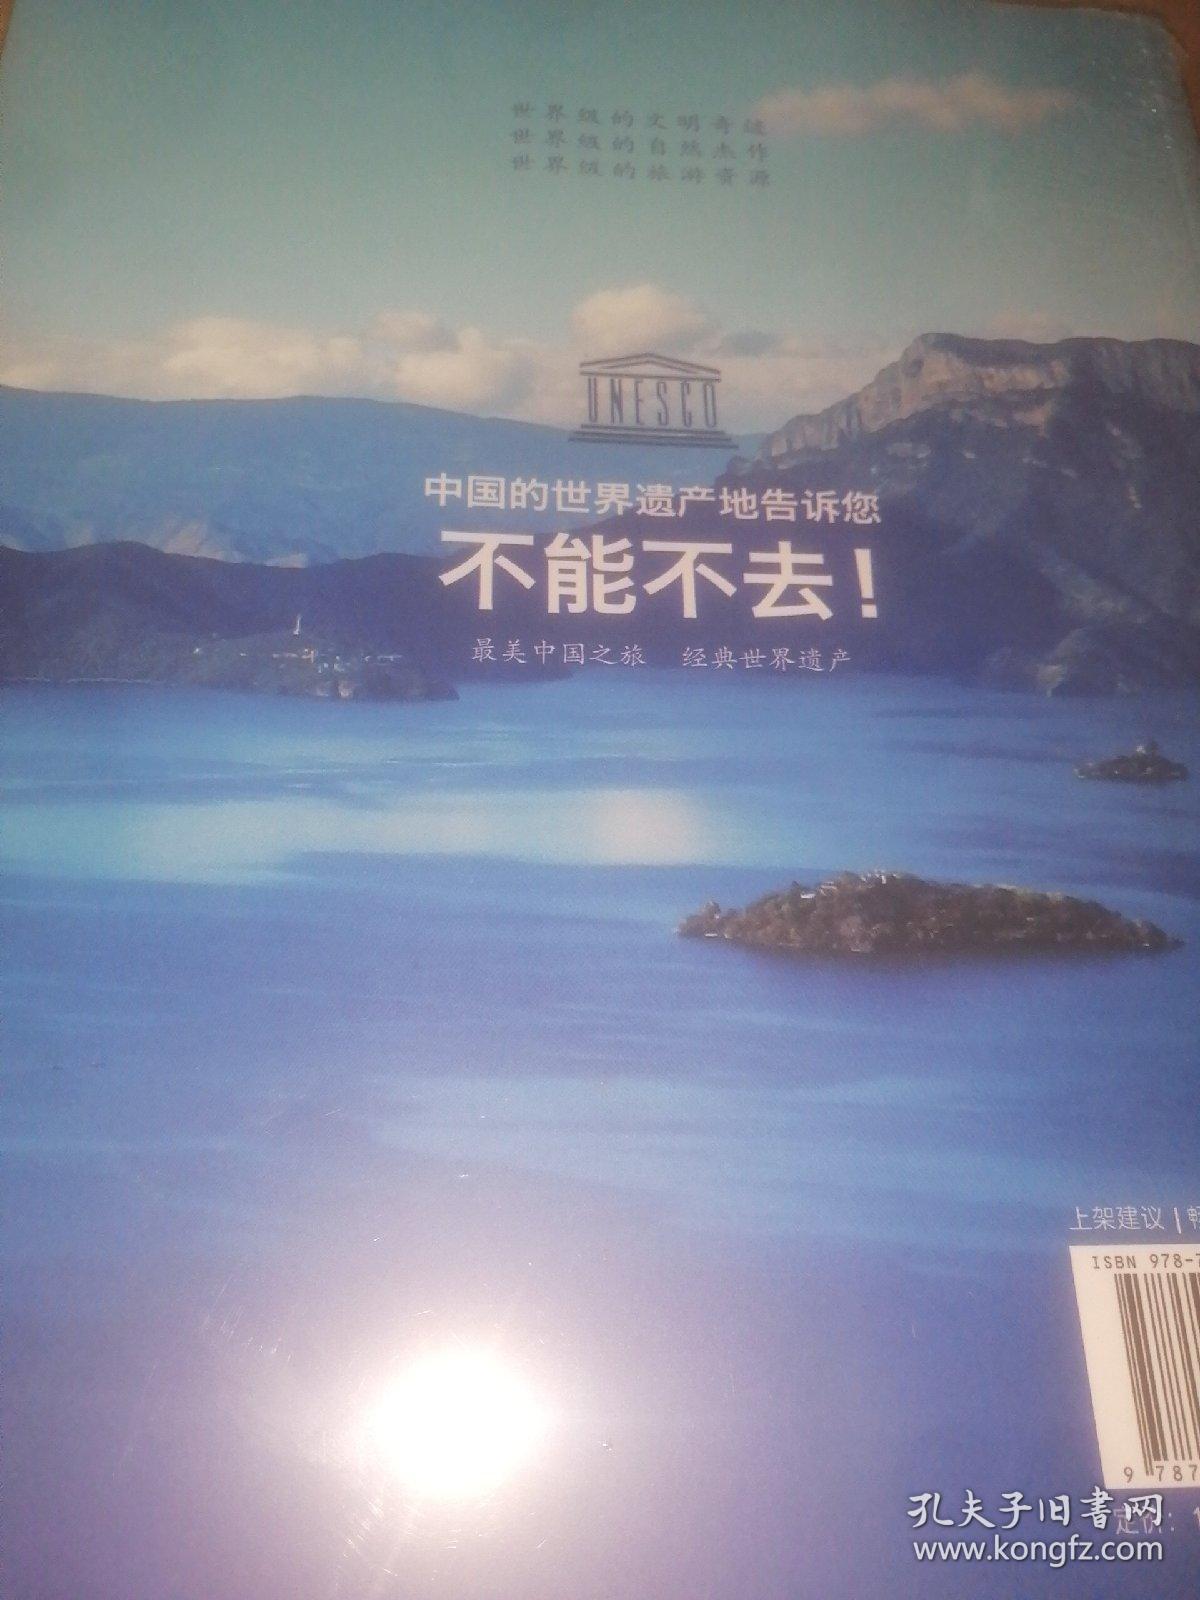 要玩就玩世界级遗产地，中国世界级旅游目的地完全图文手册